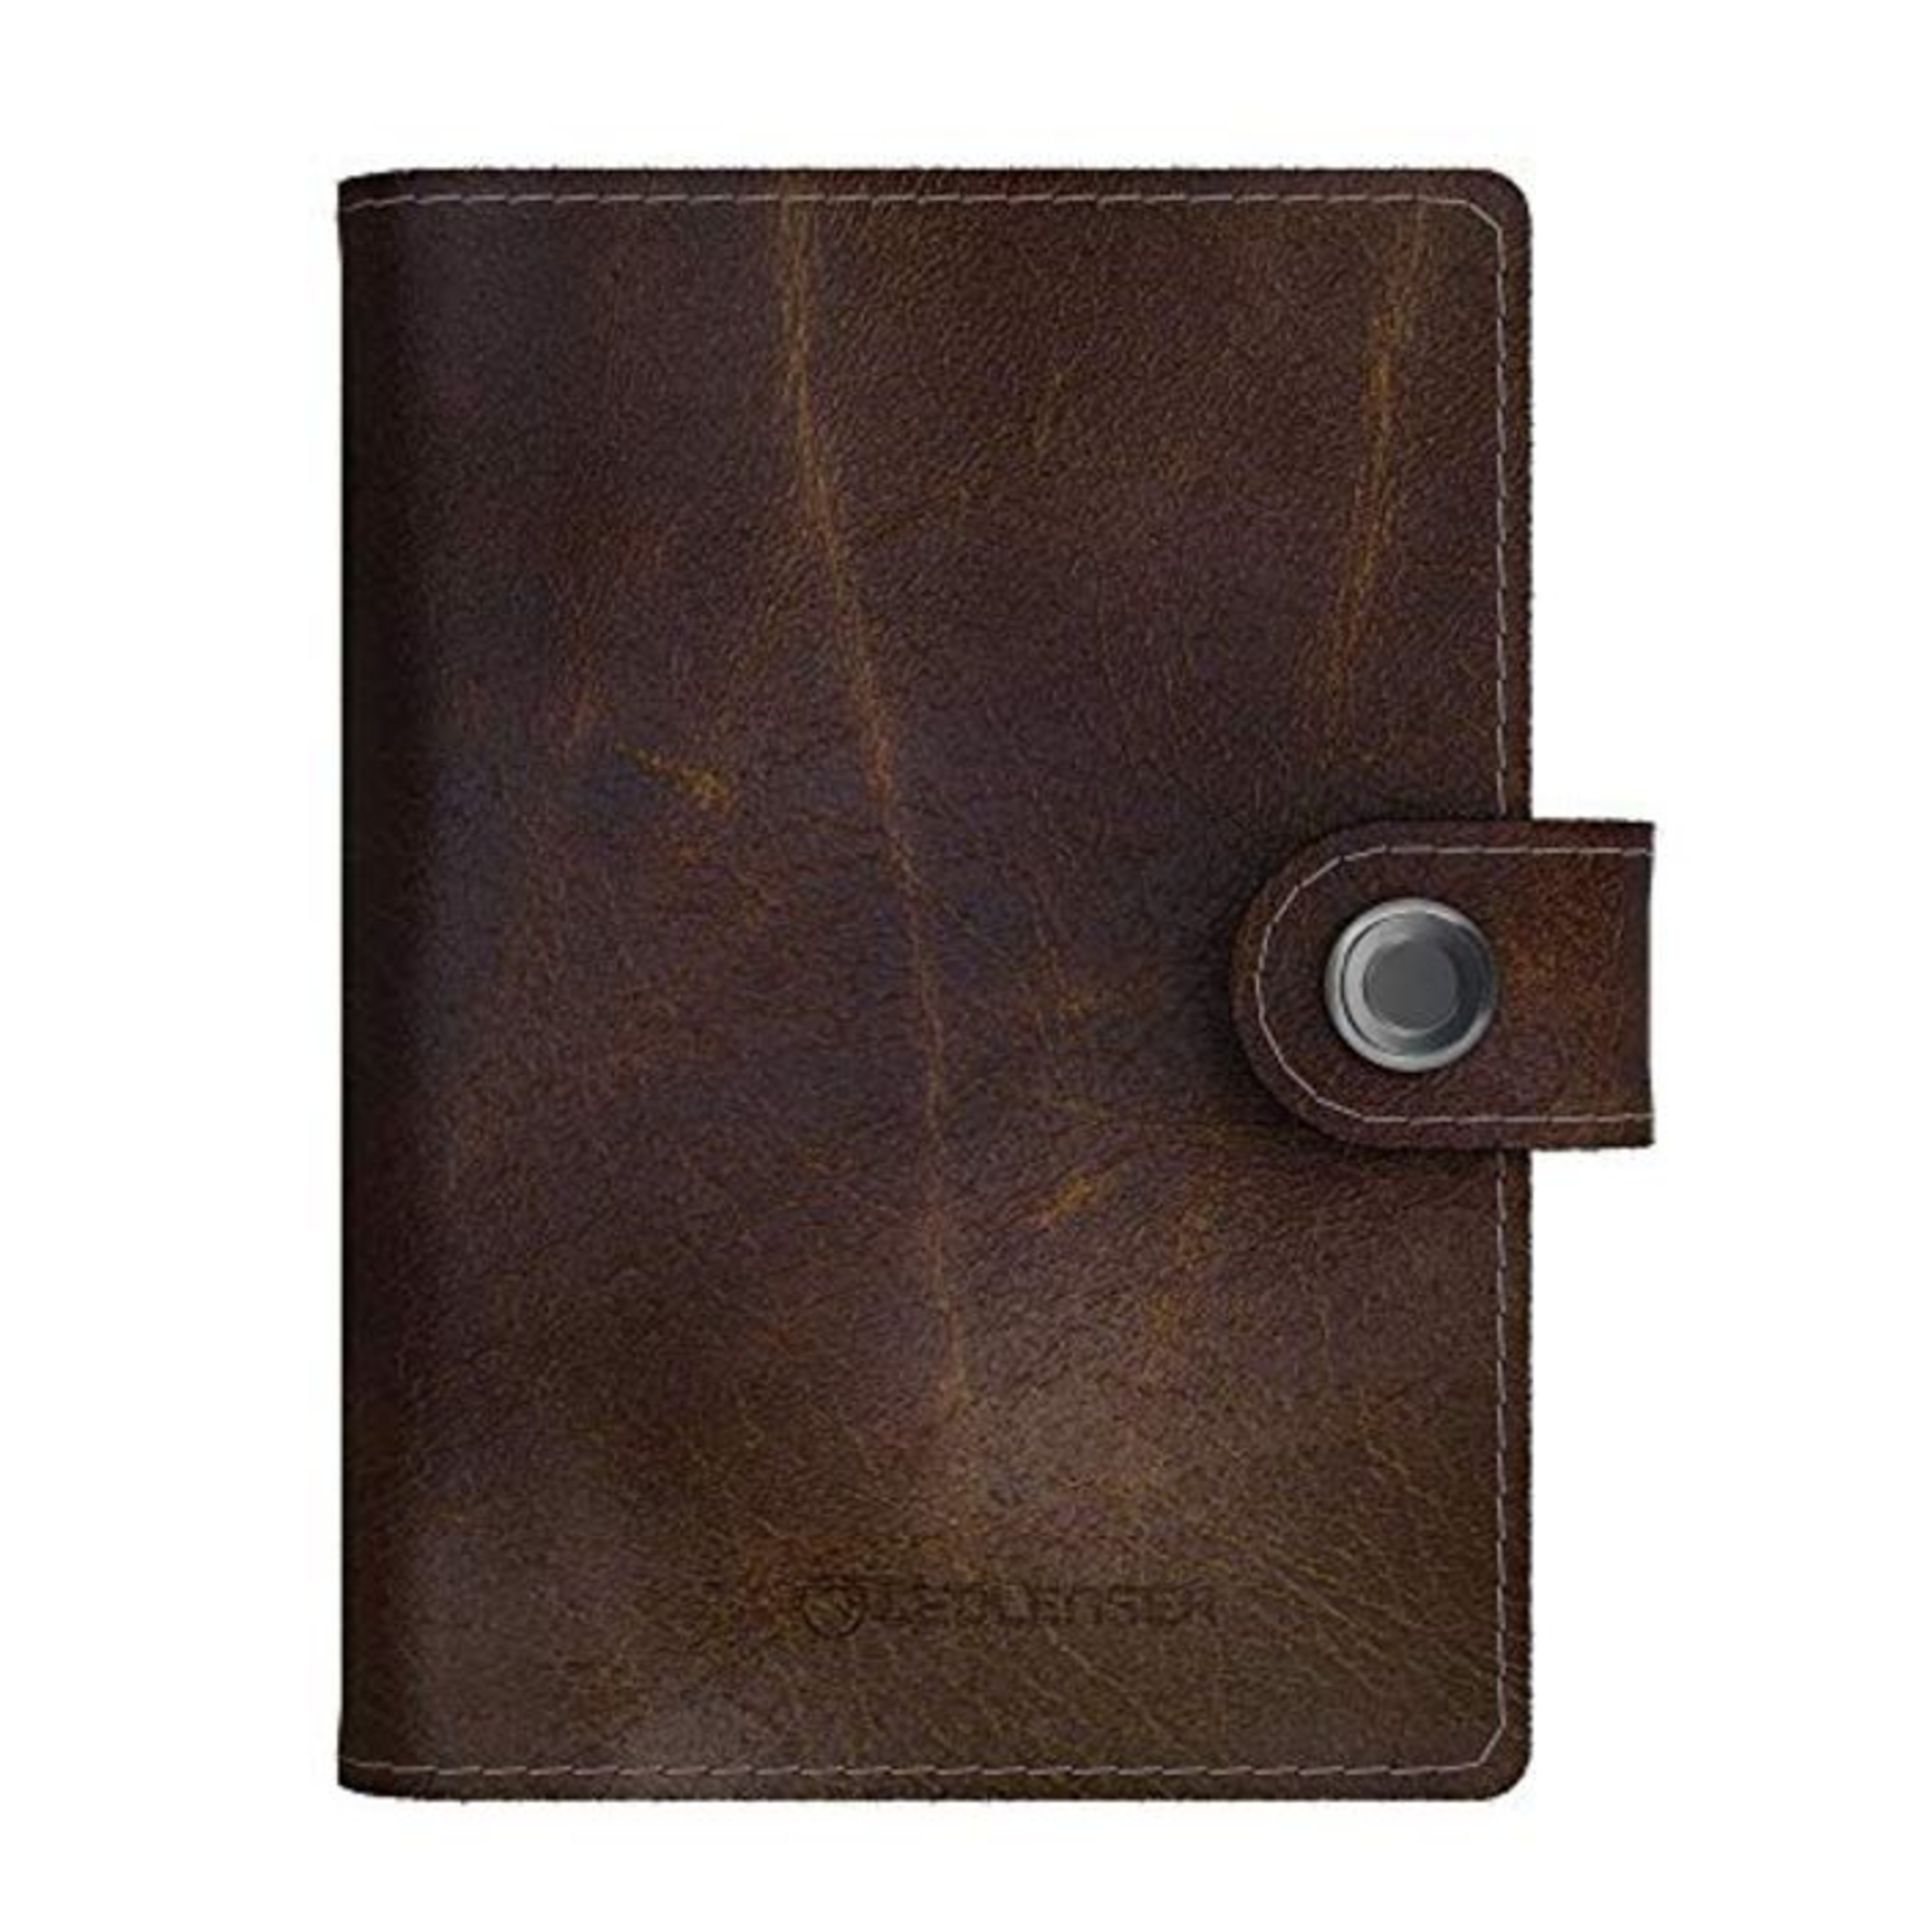 Lite Wallet Vintage Brown - Elegant Card Holder Made of High-Quality Brown Leather - I